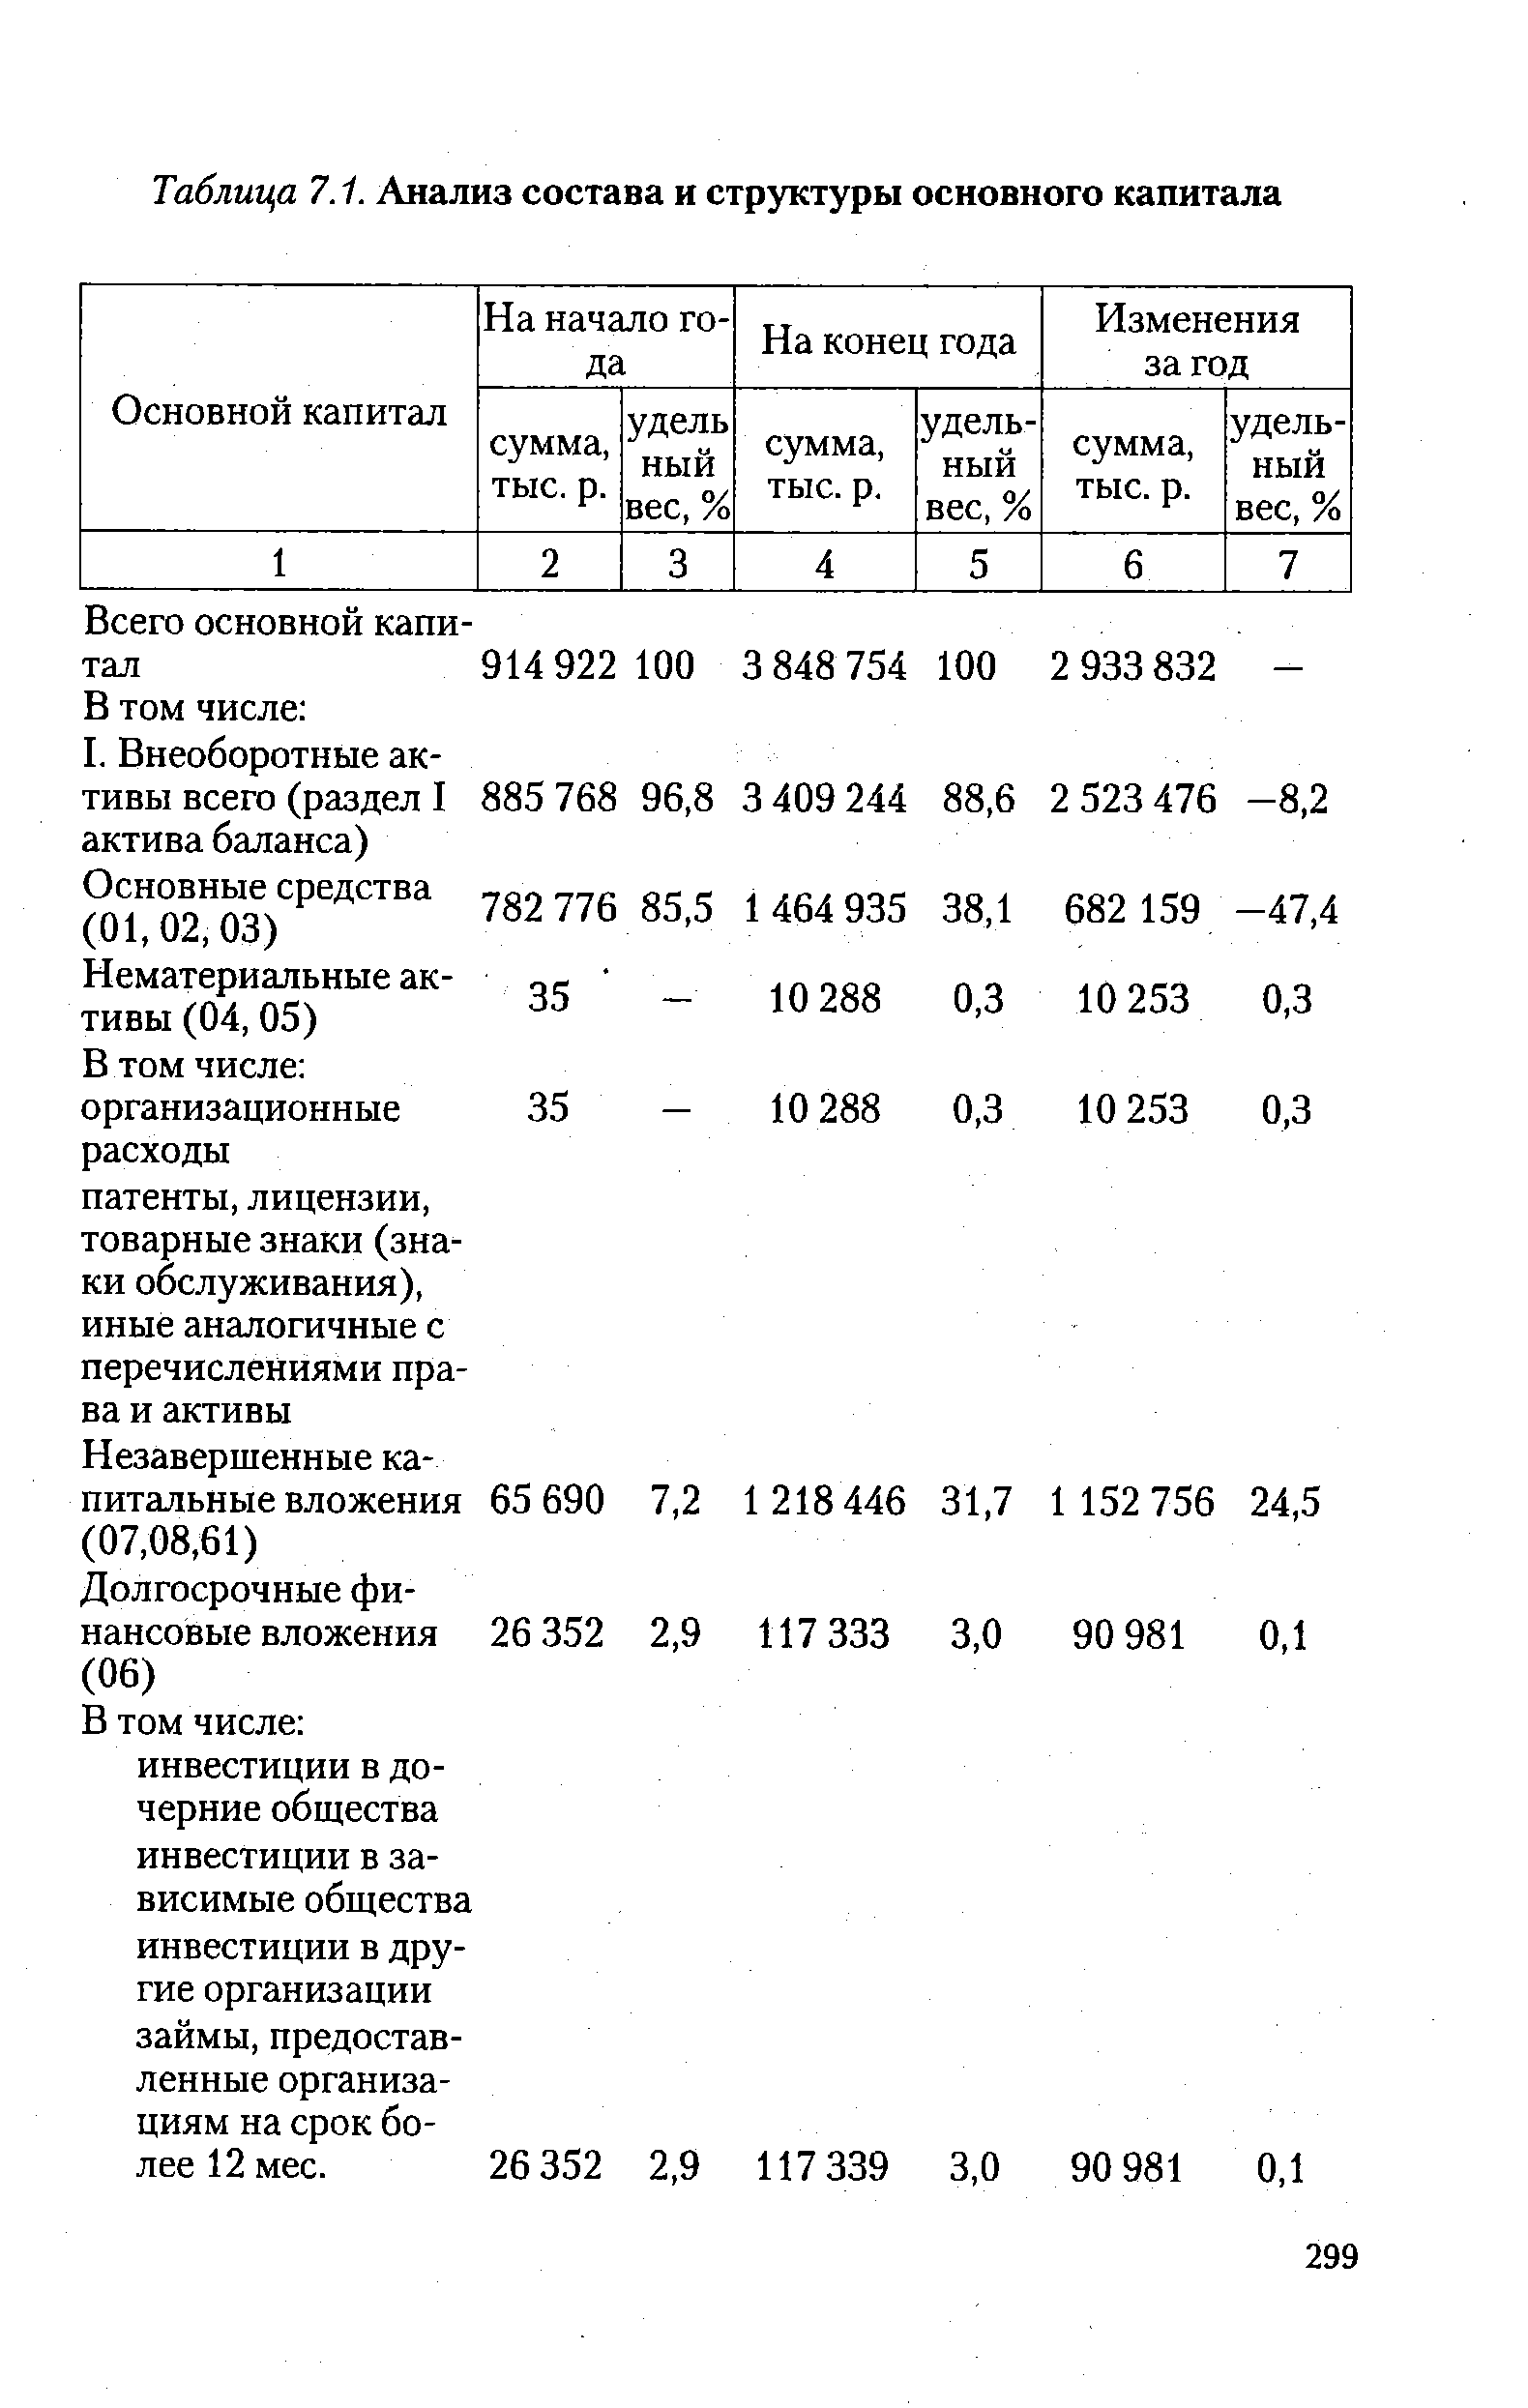 Таблица 7.1. Анализ состава и структуры основного капитала
